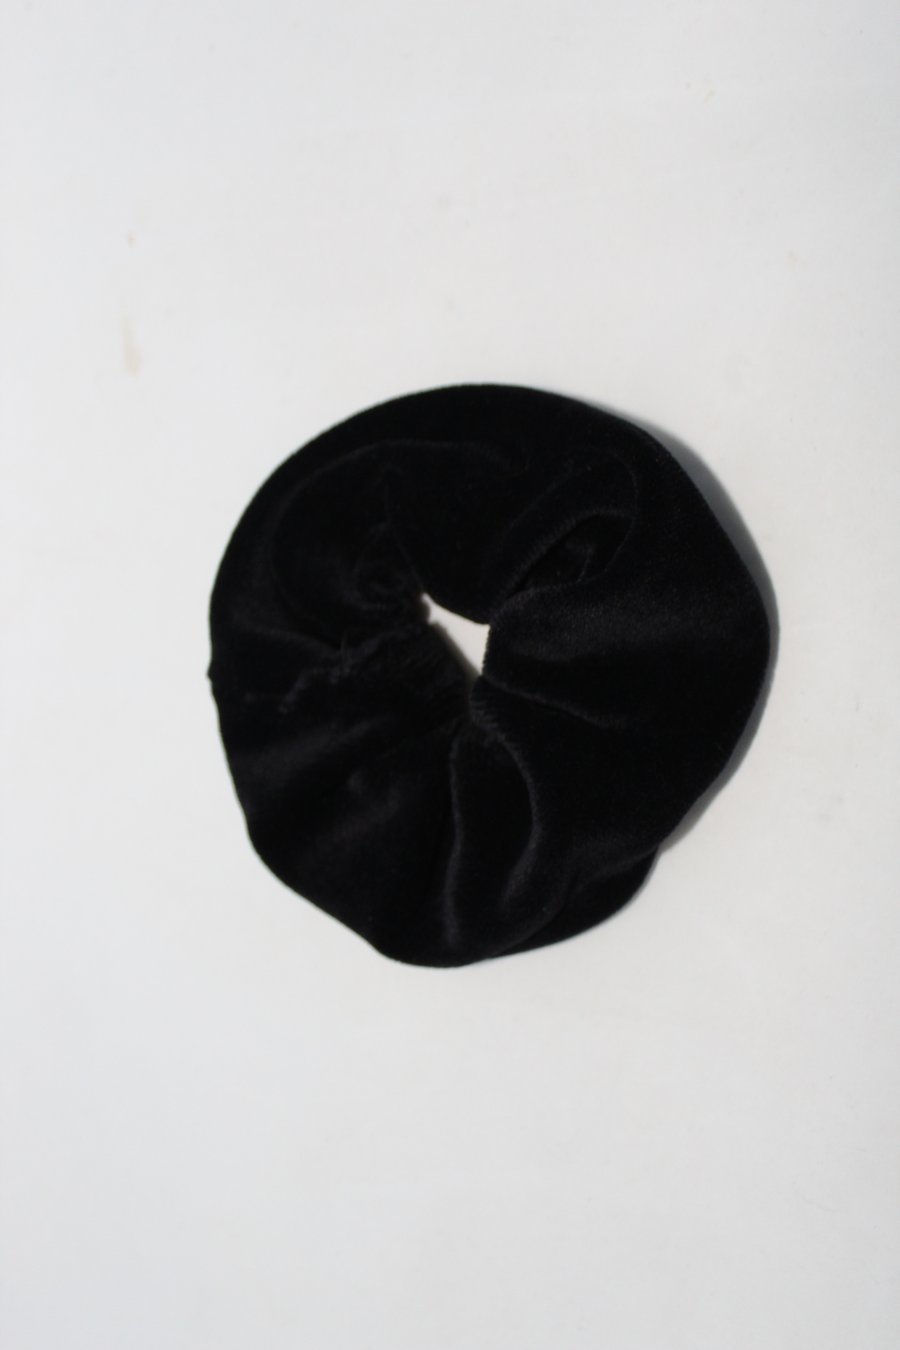 Velvet hair scrunchie,Black hair accessory handmade,zero waste,gift